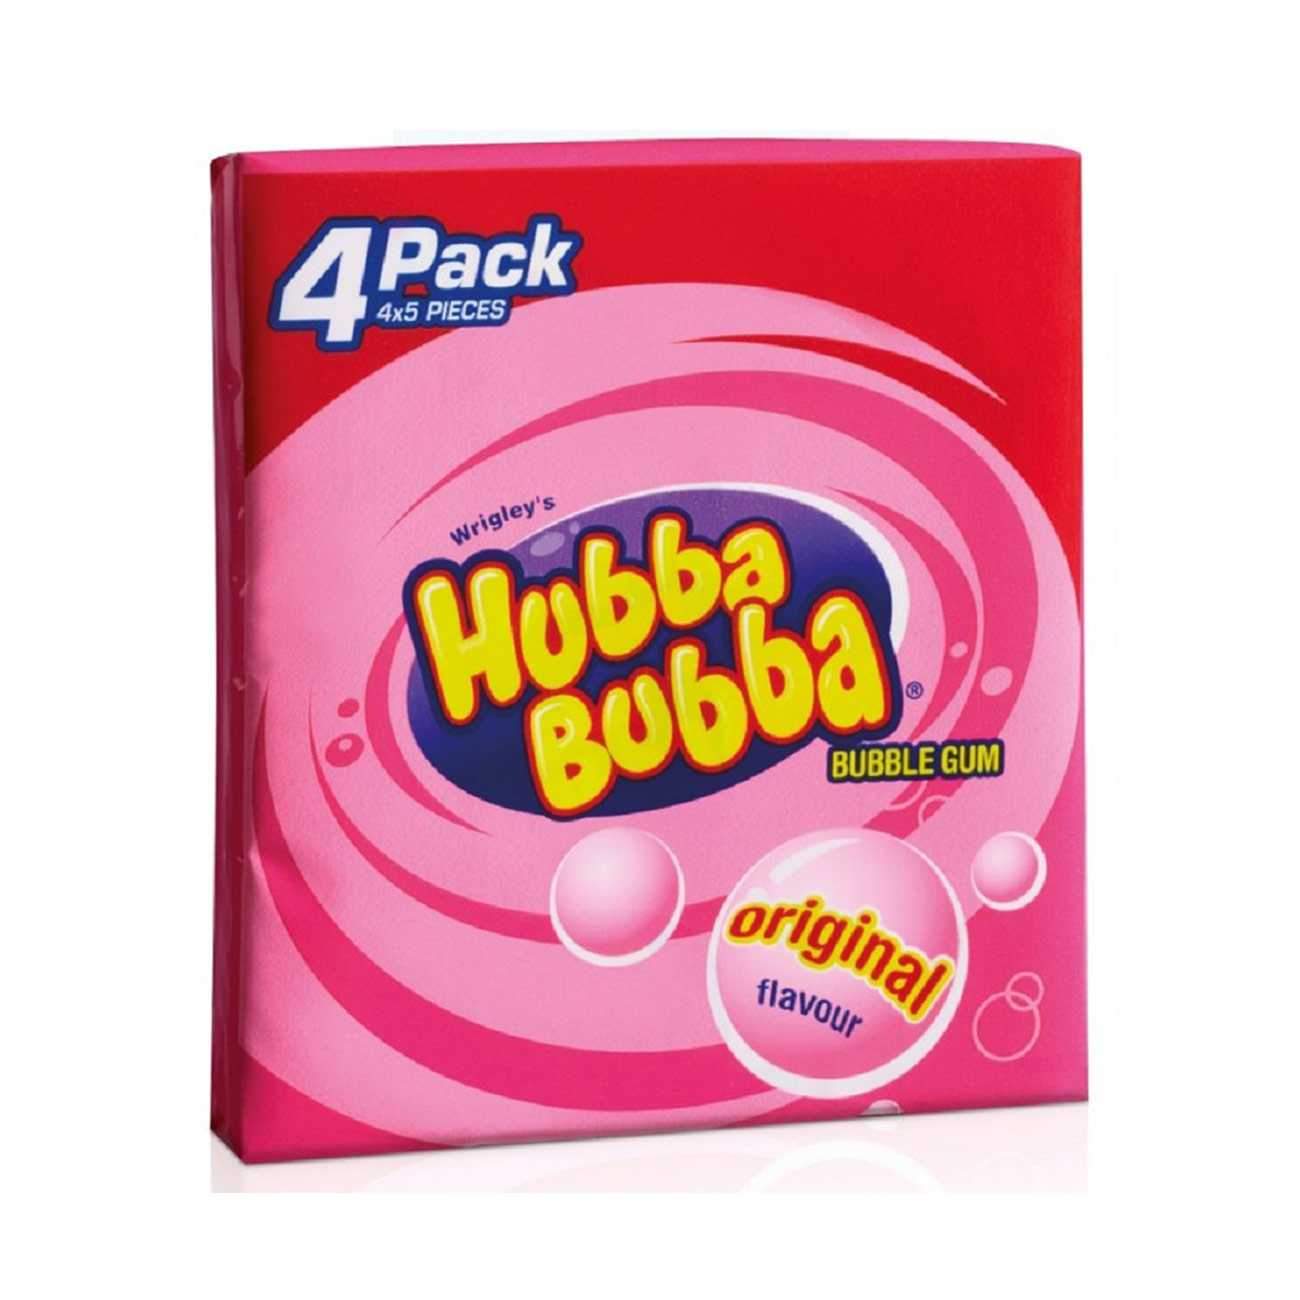 HUBBA BUBBA ORIGINAL 4-PACK bestvalue.eu